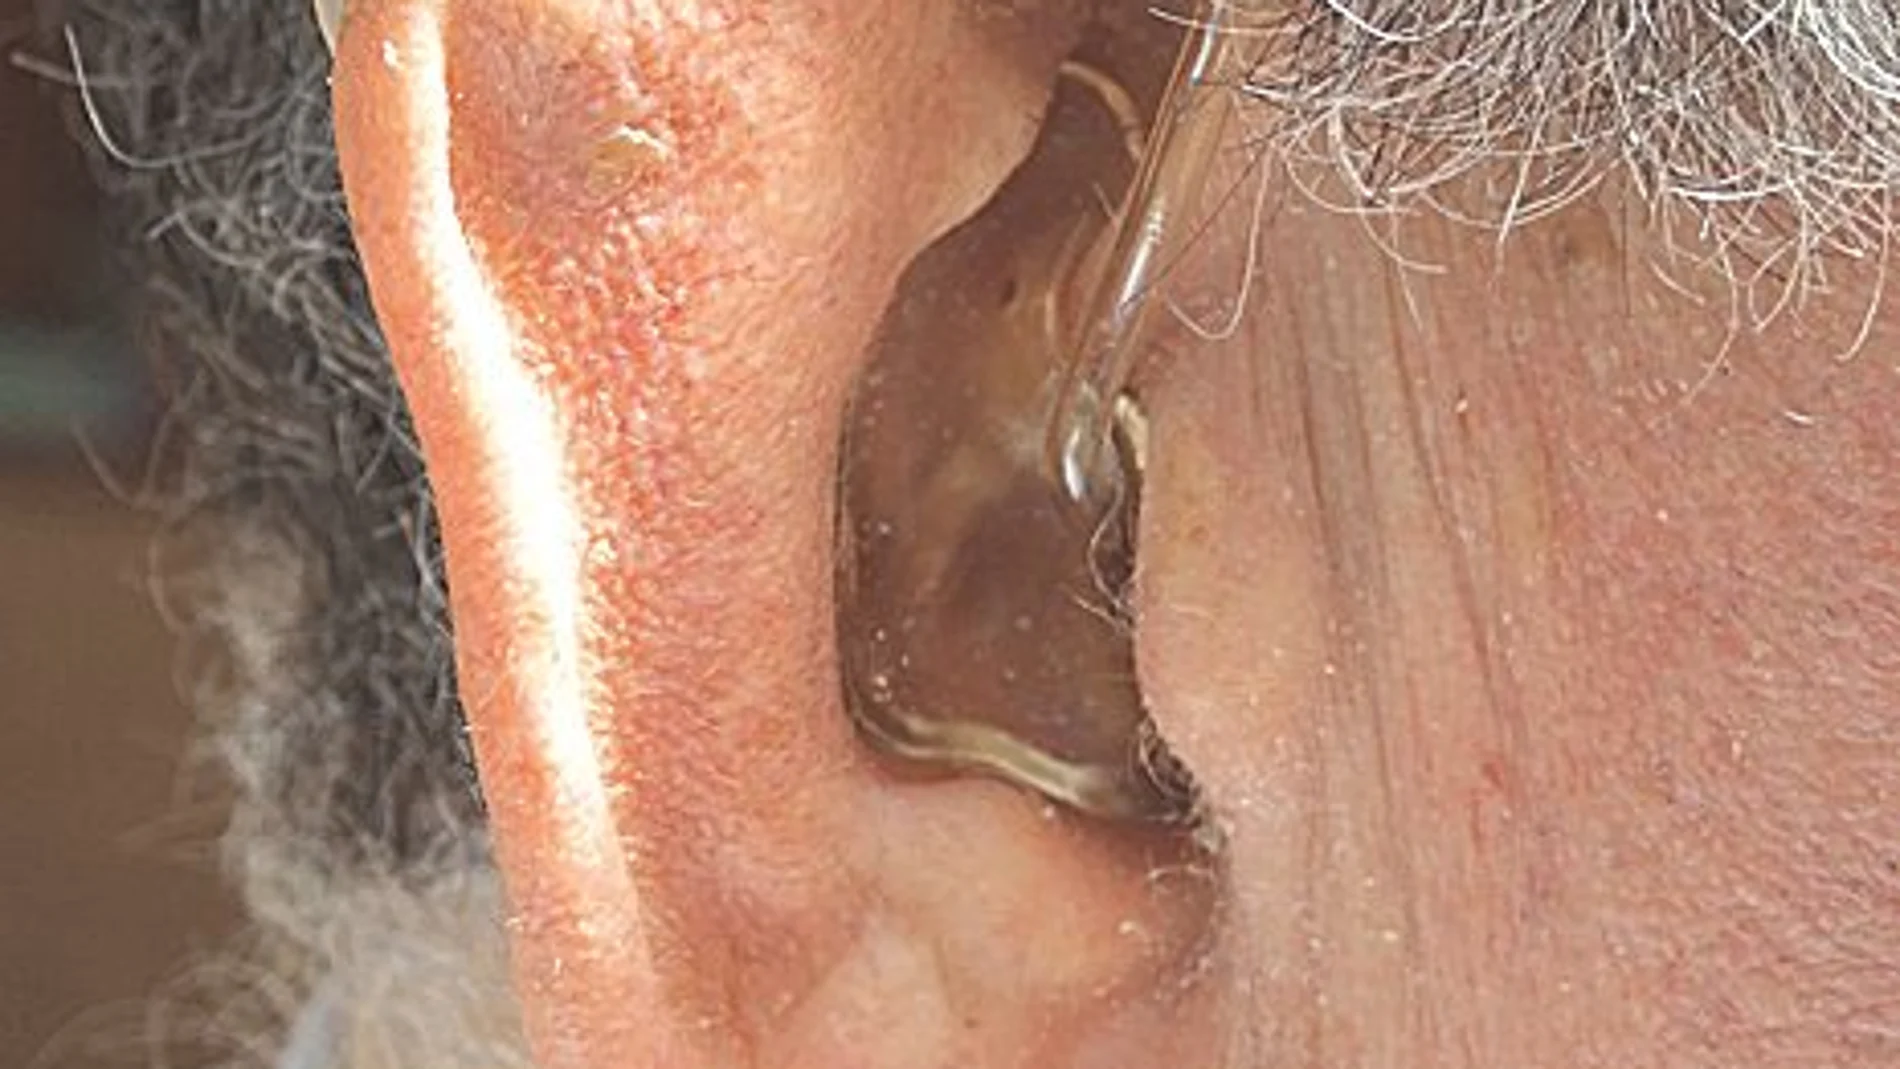 Los investigadores han concluido que la pérdida auditiva se asocia con un aumento del 87% en el riesgo de fragilidad